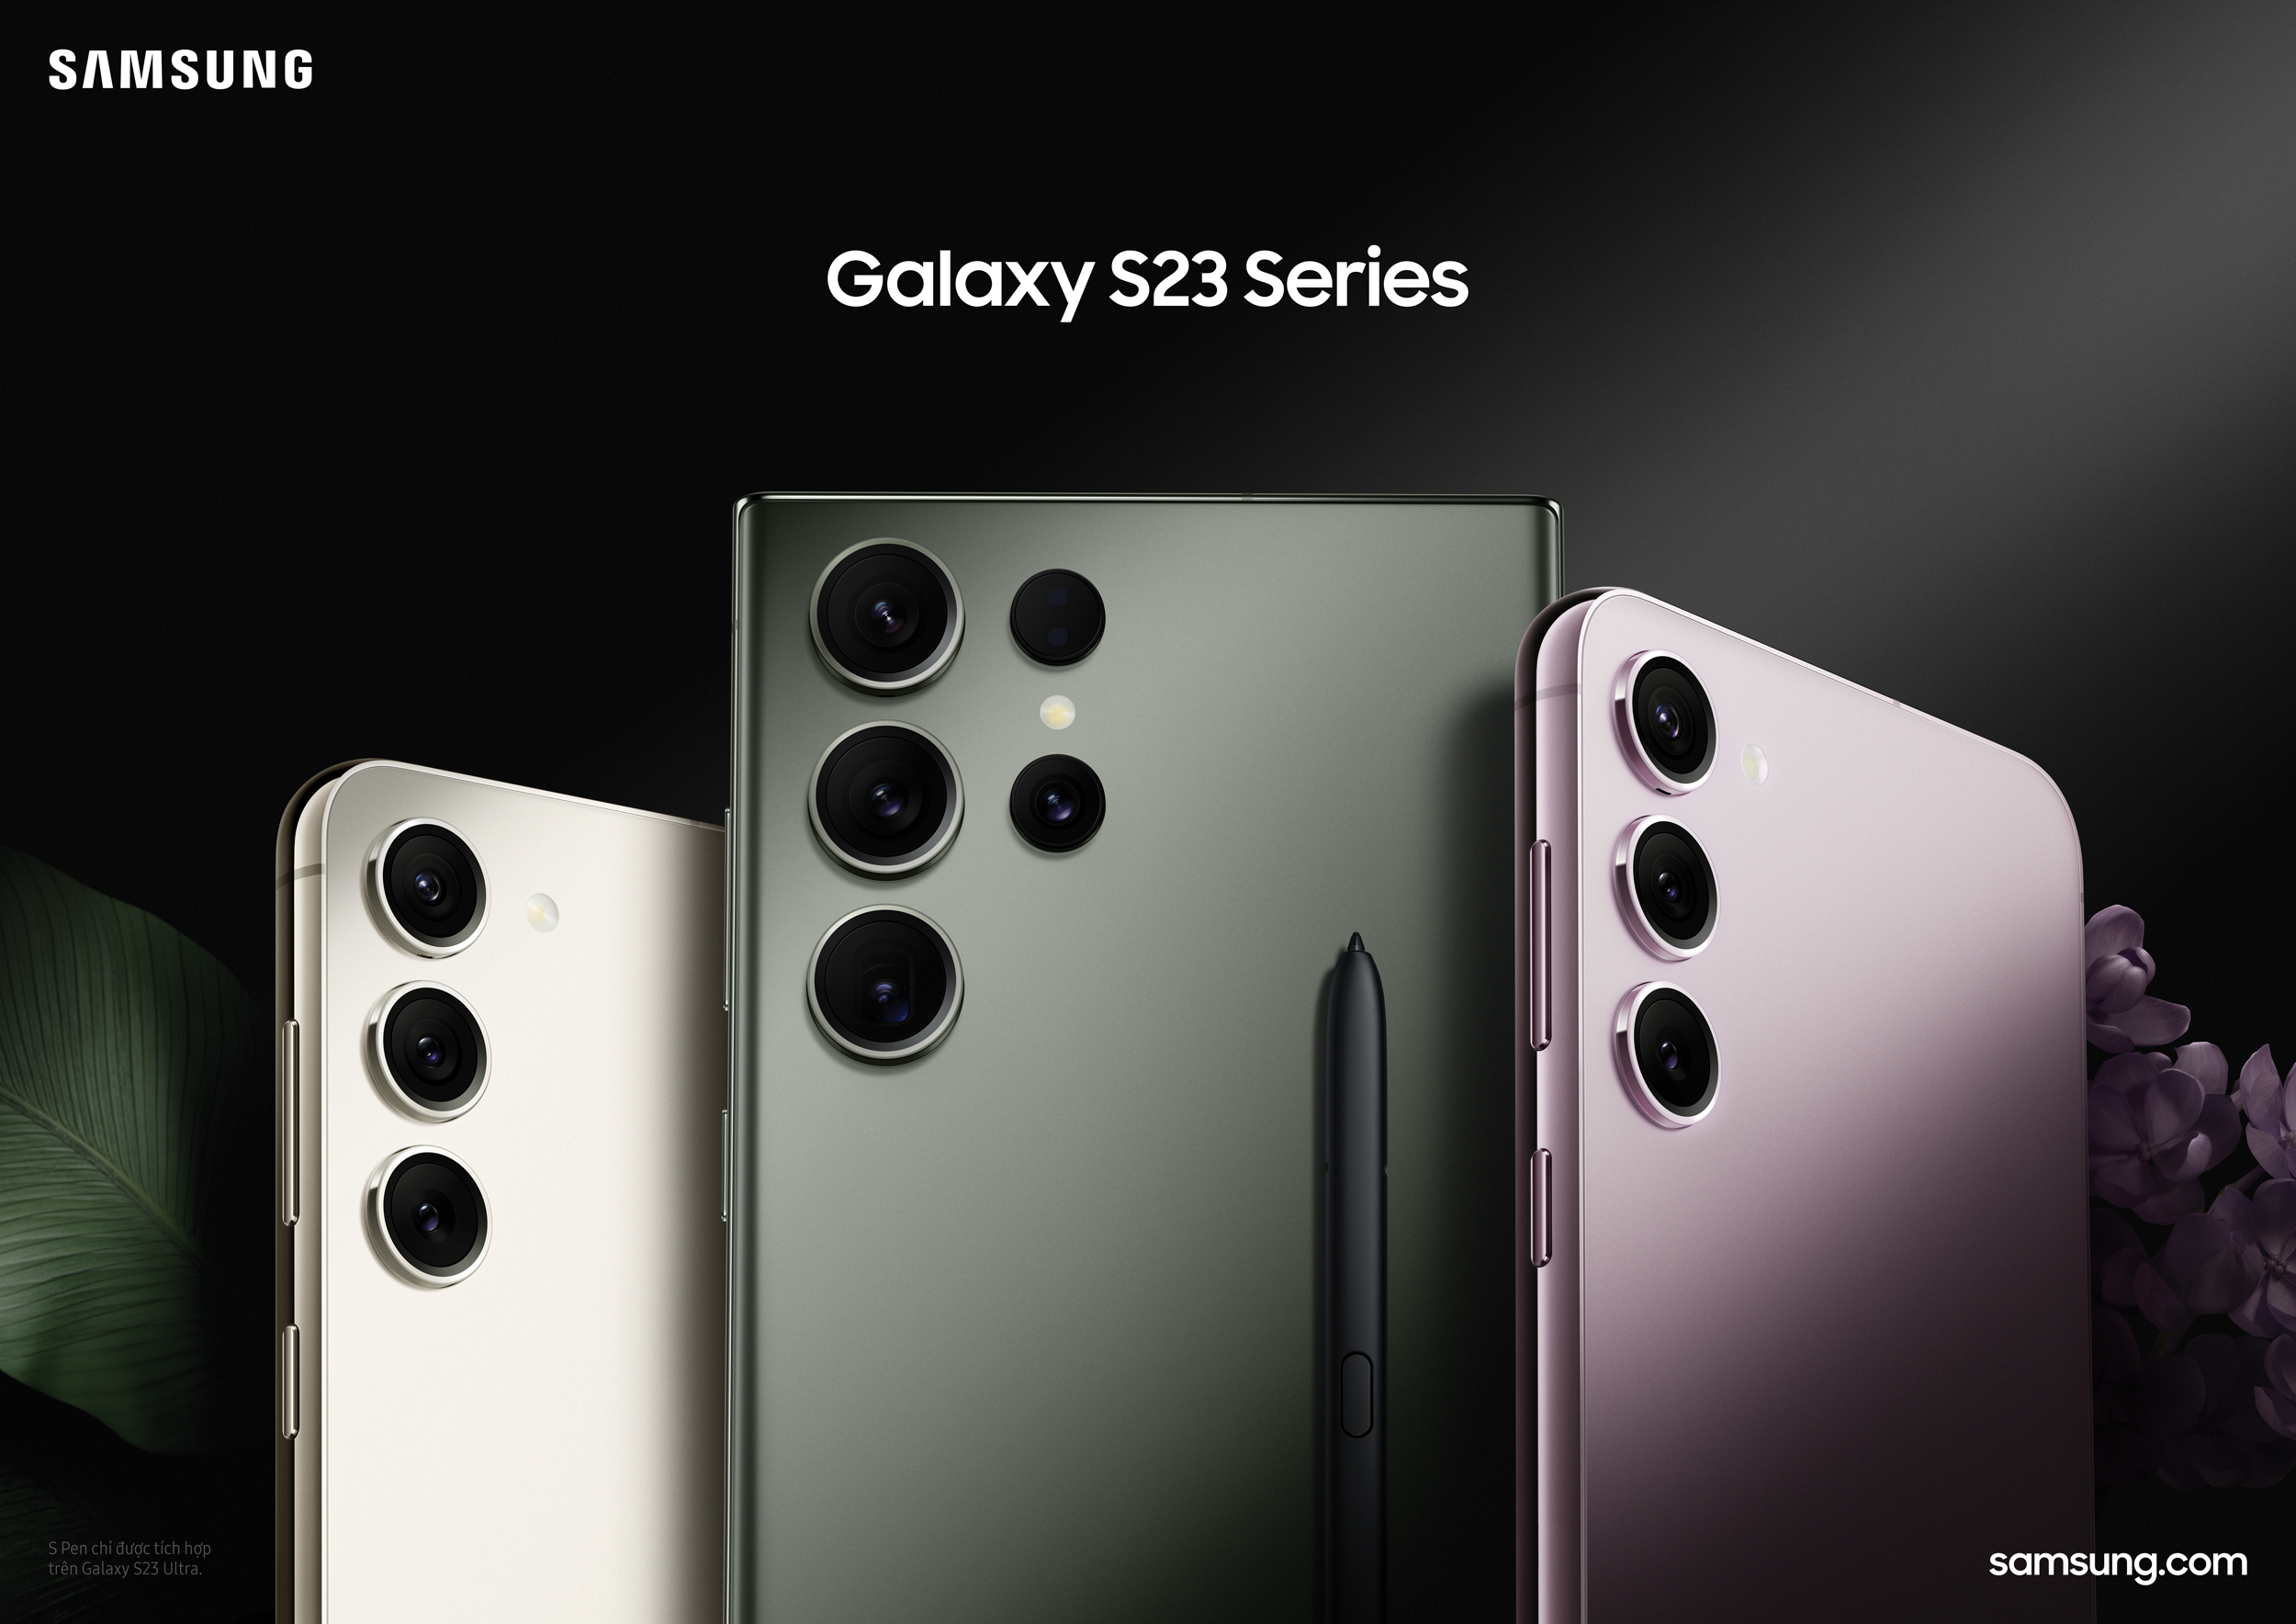 Samsung chính thức ra mắt bộ ba Galaxy S23 series mới: Galaxy S23 Ultra, Galaxy S23+ và Galaxy S23 với thiết kế trải nghiệm cao cấp cho hiện tại và tương lai